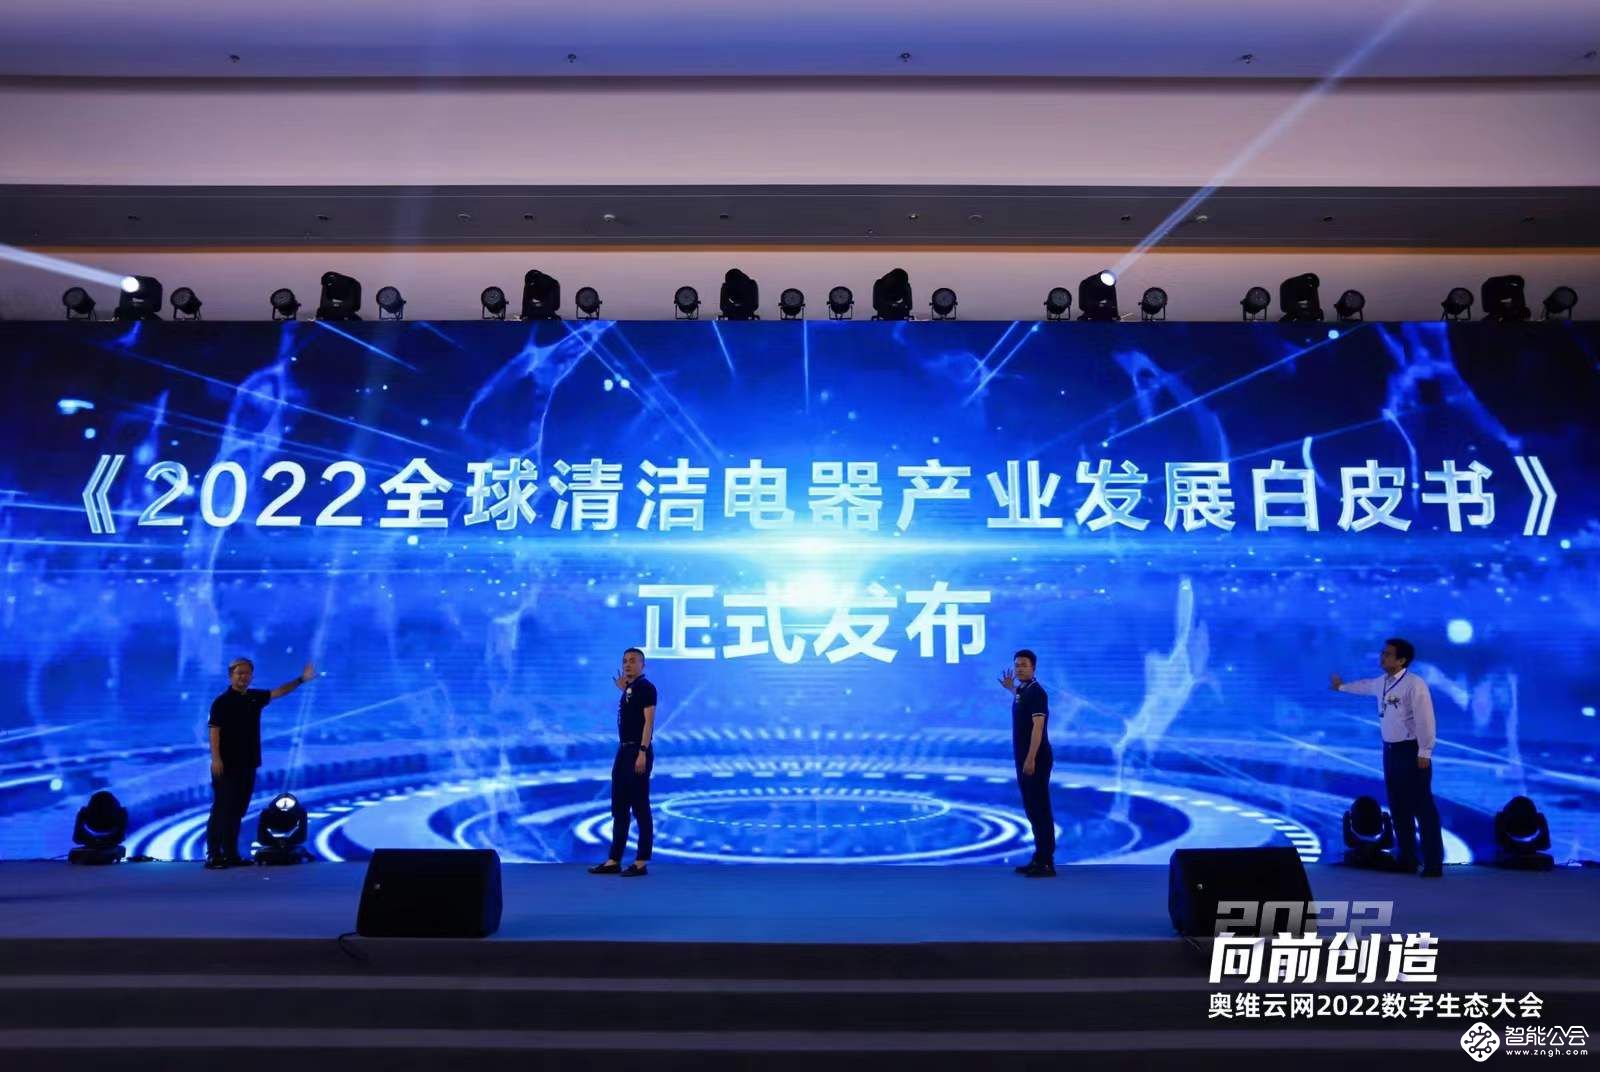 2022第二届清洁电器产业创新峰会圆满召开 智能公会